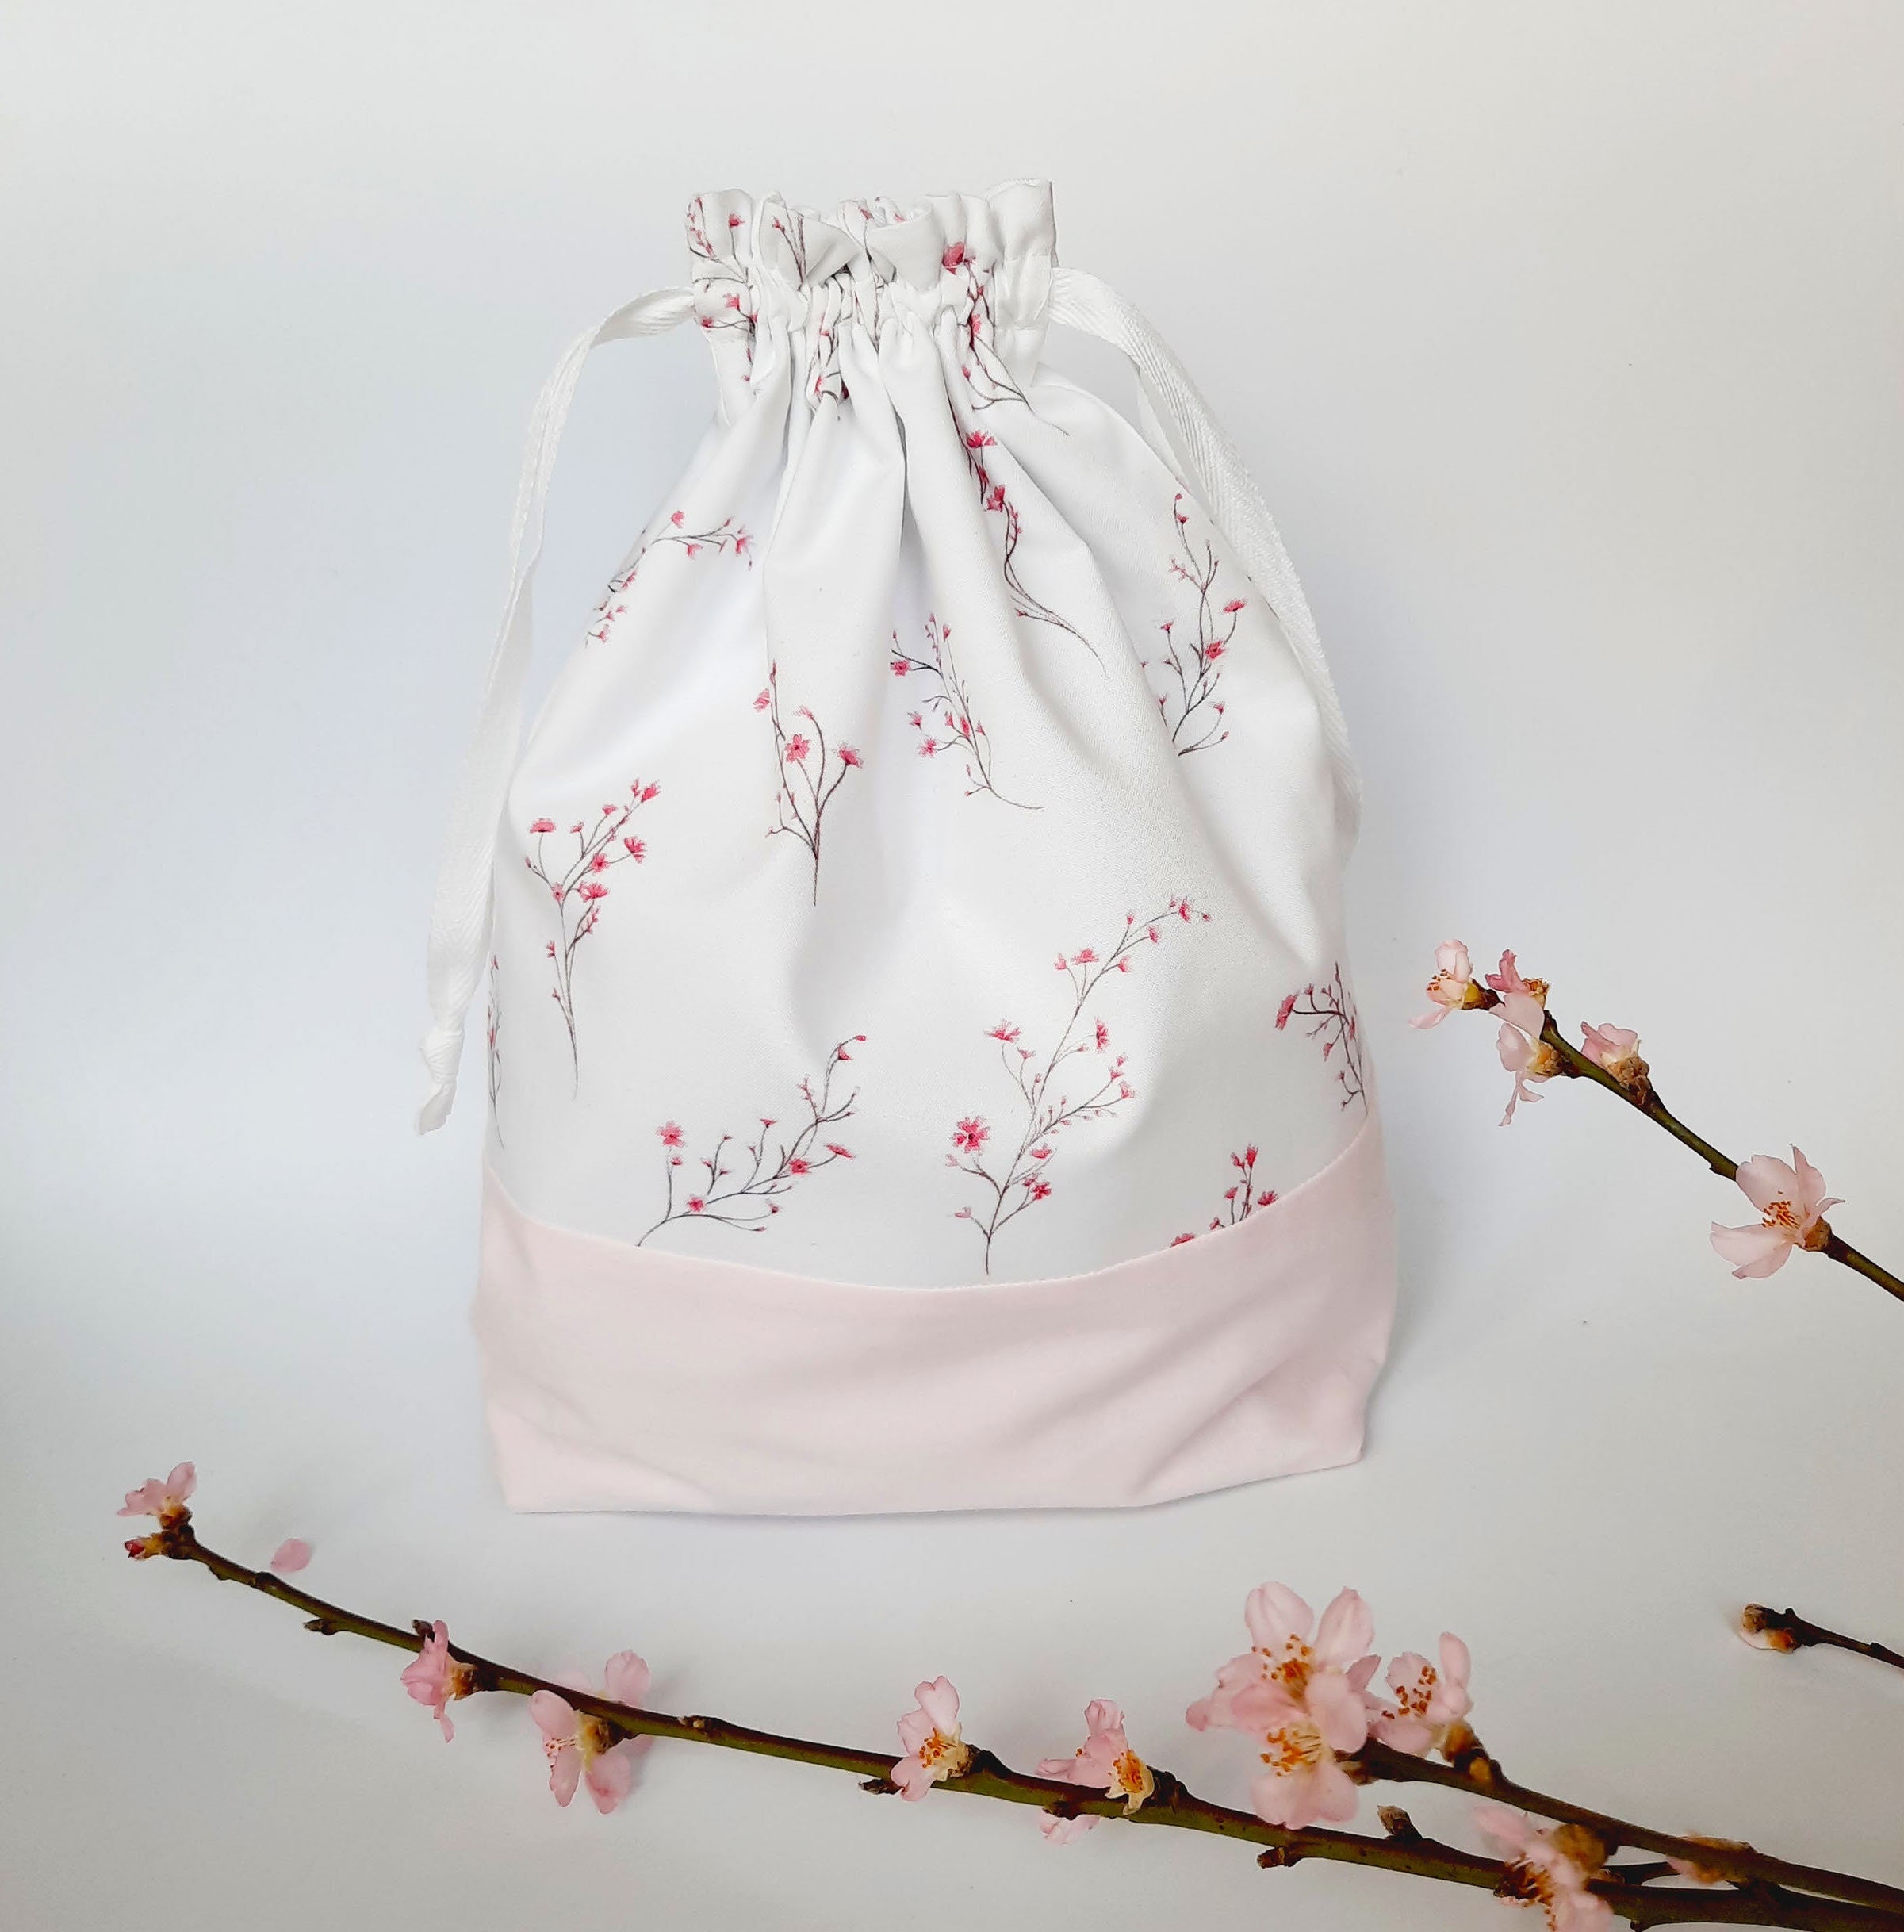 Cherry Blossom Pencil Case / Flowery Pen Case / Floral Pencil Pouch /  Flower Pen Pouch / Zipper Bag, Pouch / Makeup Bag / School Supplies 